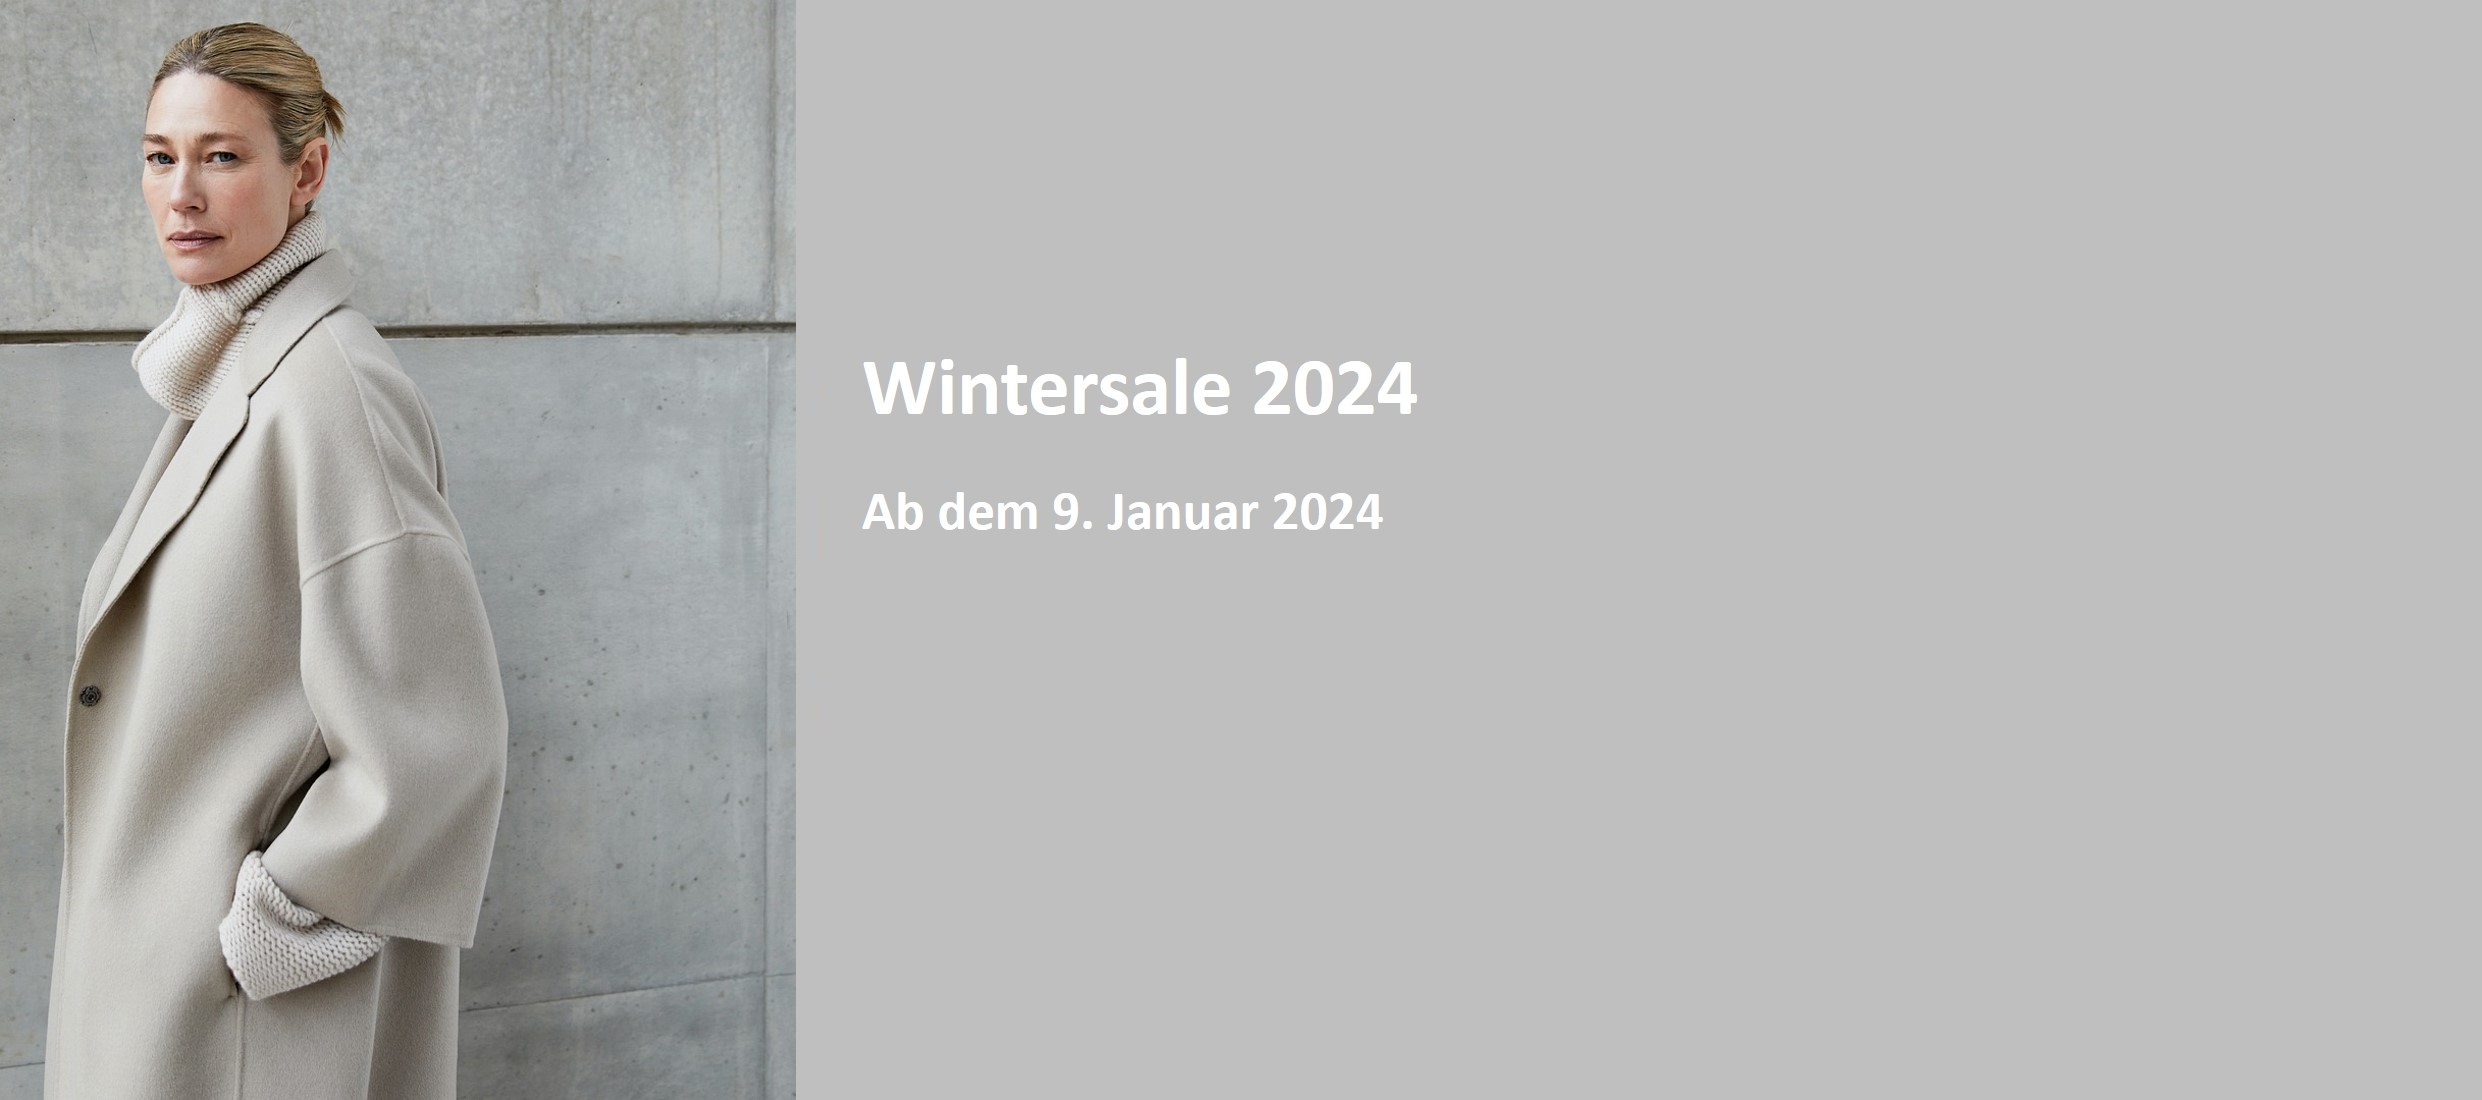 Wintersale 2024